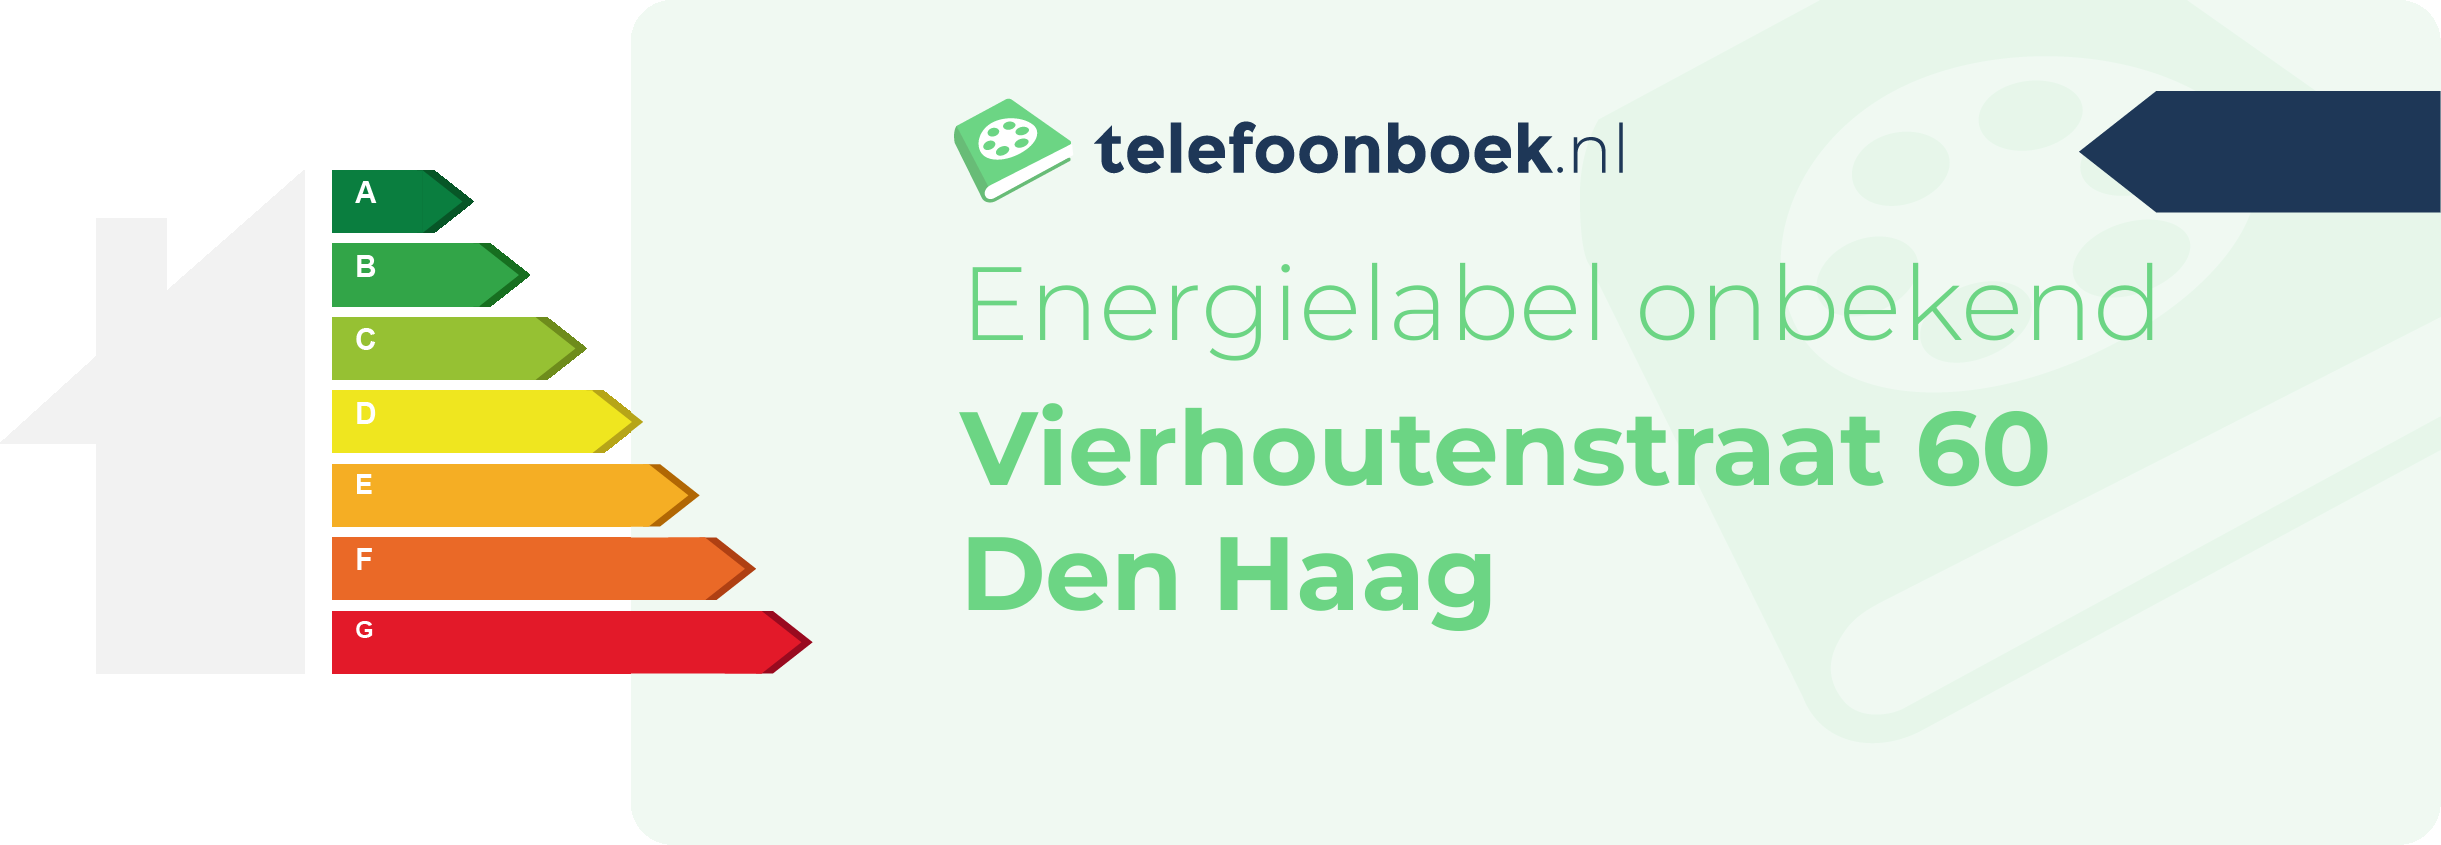 Energielabel Vierhoutenstraat 60 Den Haag